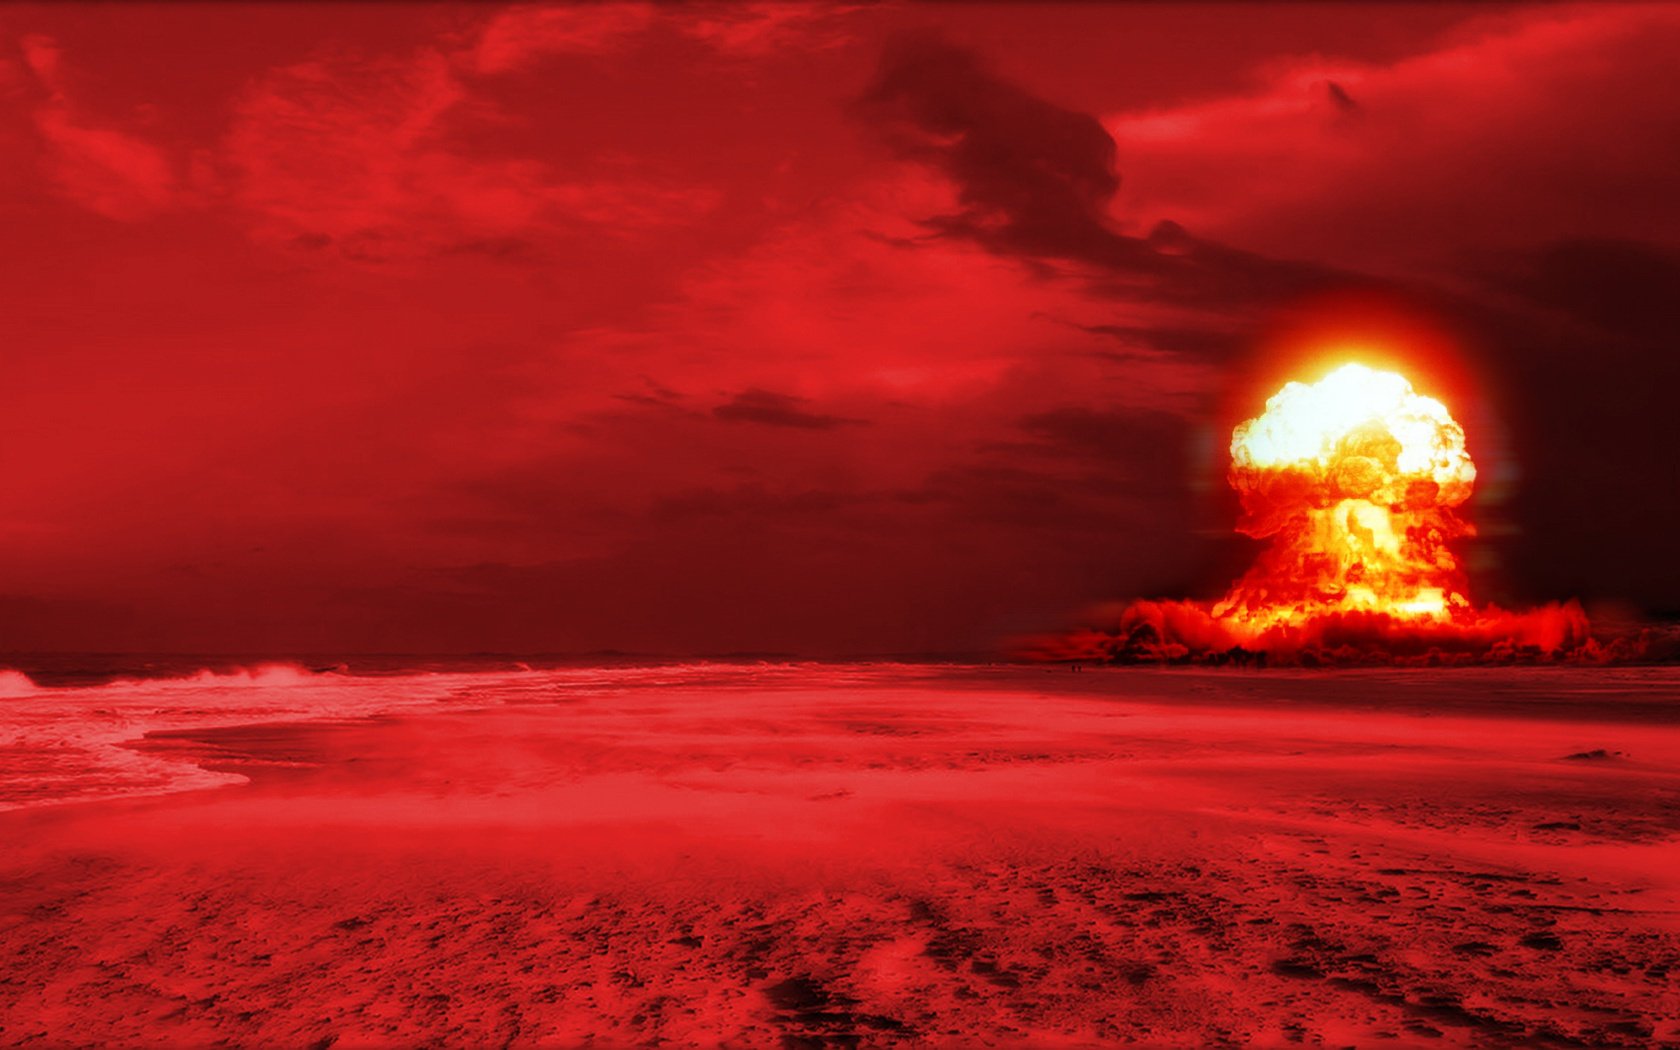 На красном фоне в пустыне яркий ядерный взрыв Обои на рабочий стол.